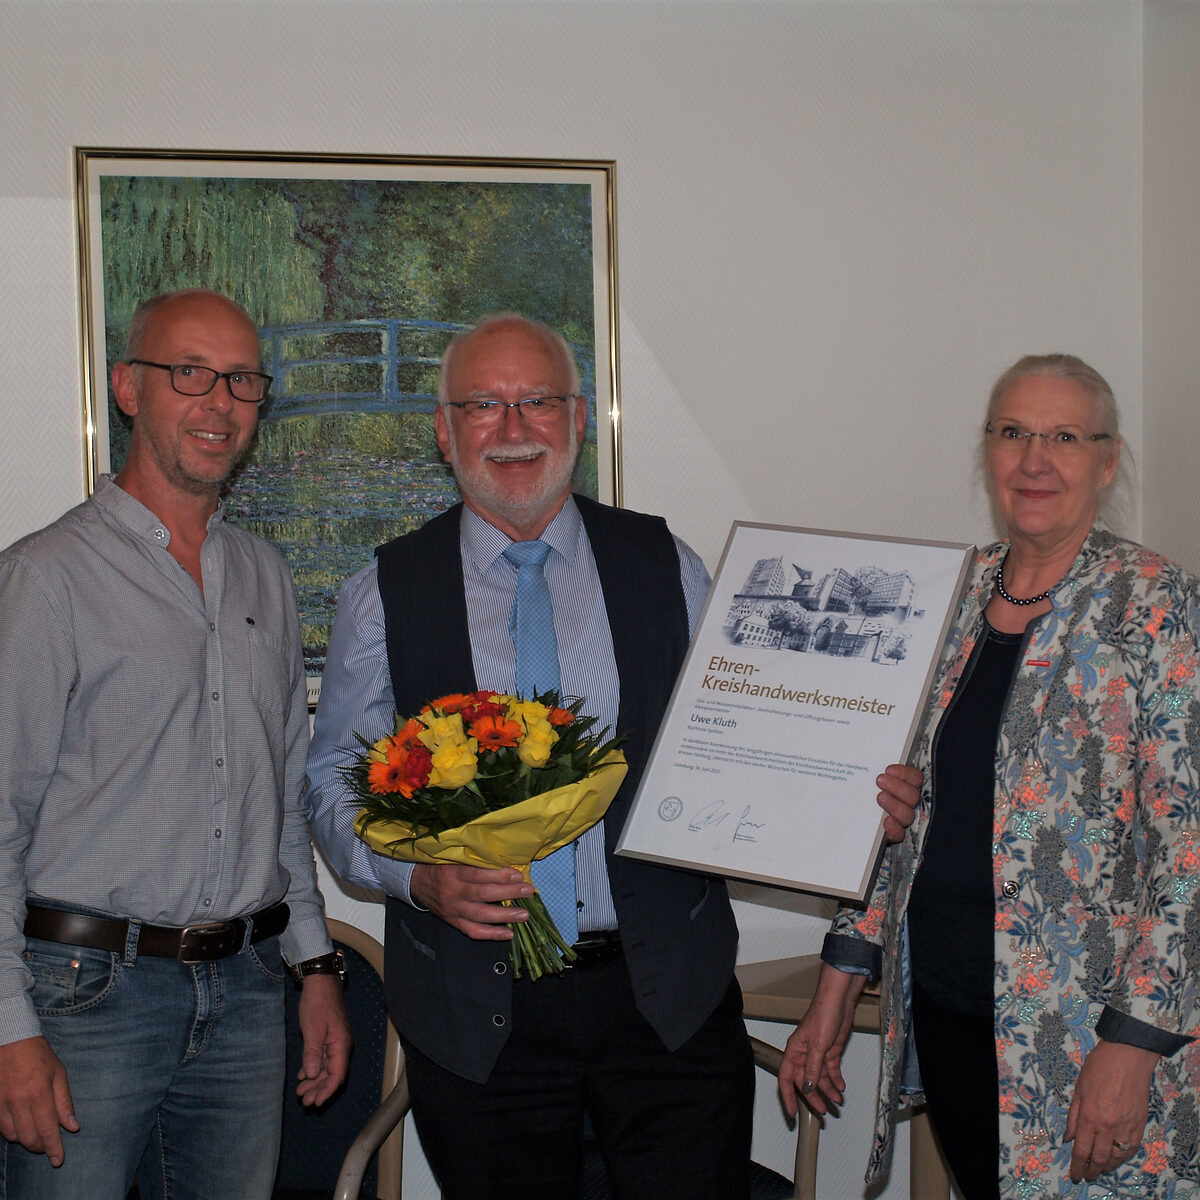 Uwe Kluth war zehn Jahre Kreishandwerksmeister - nun übernimmt Bernd Hintze (l.) das Amt. HWK-Vizepräsidentin Heidi Kluth gratuliert.